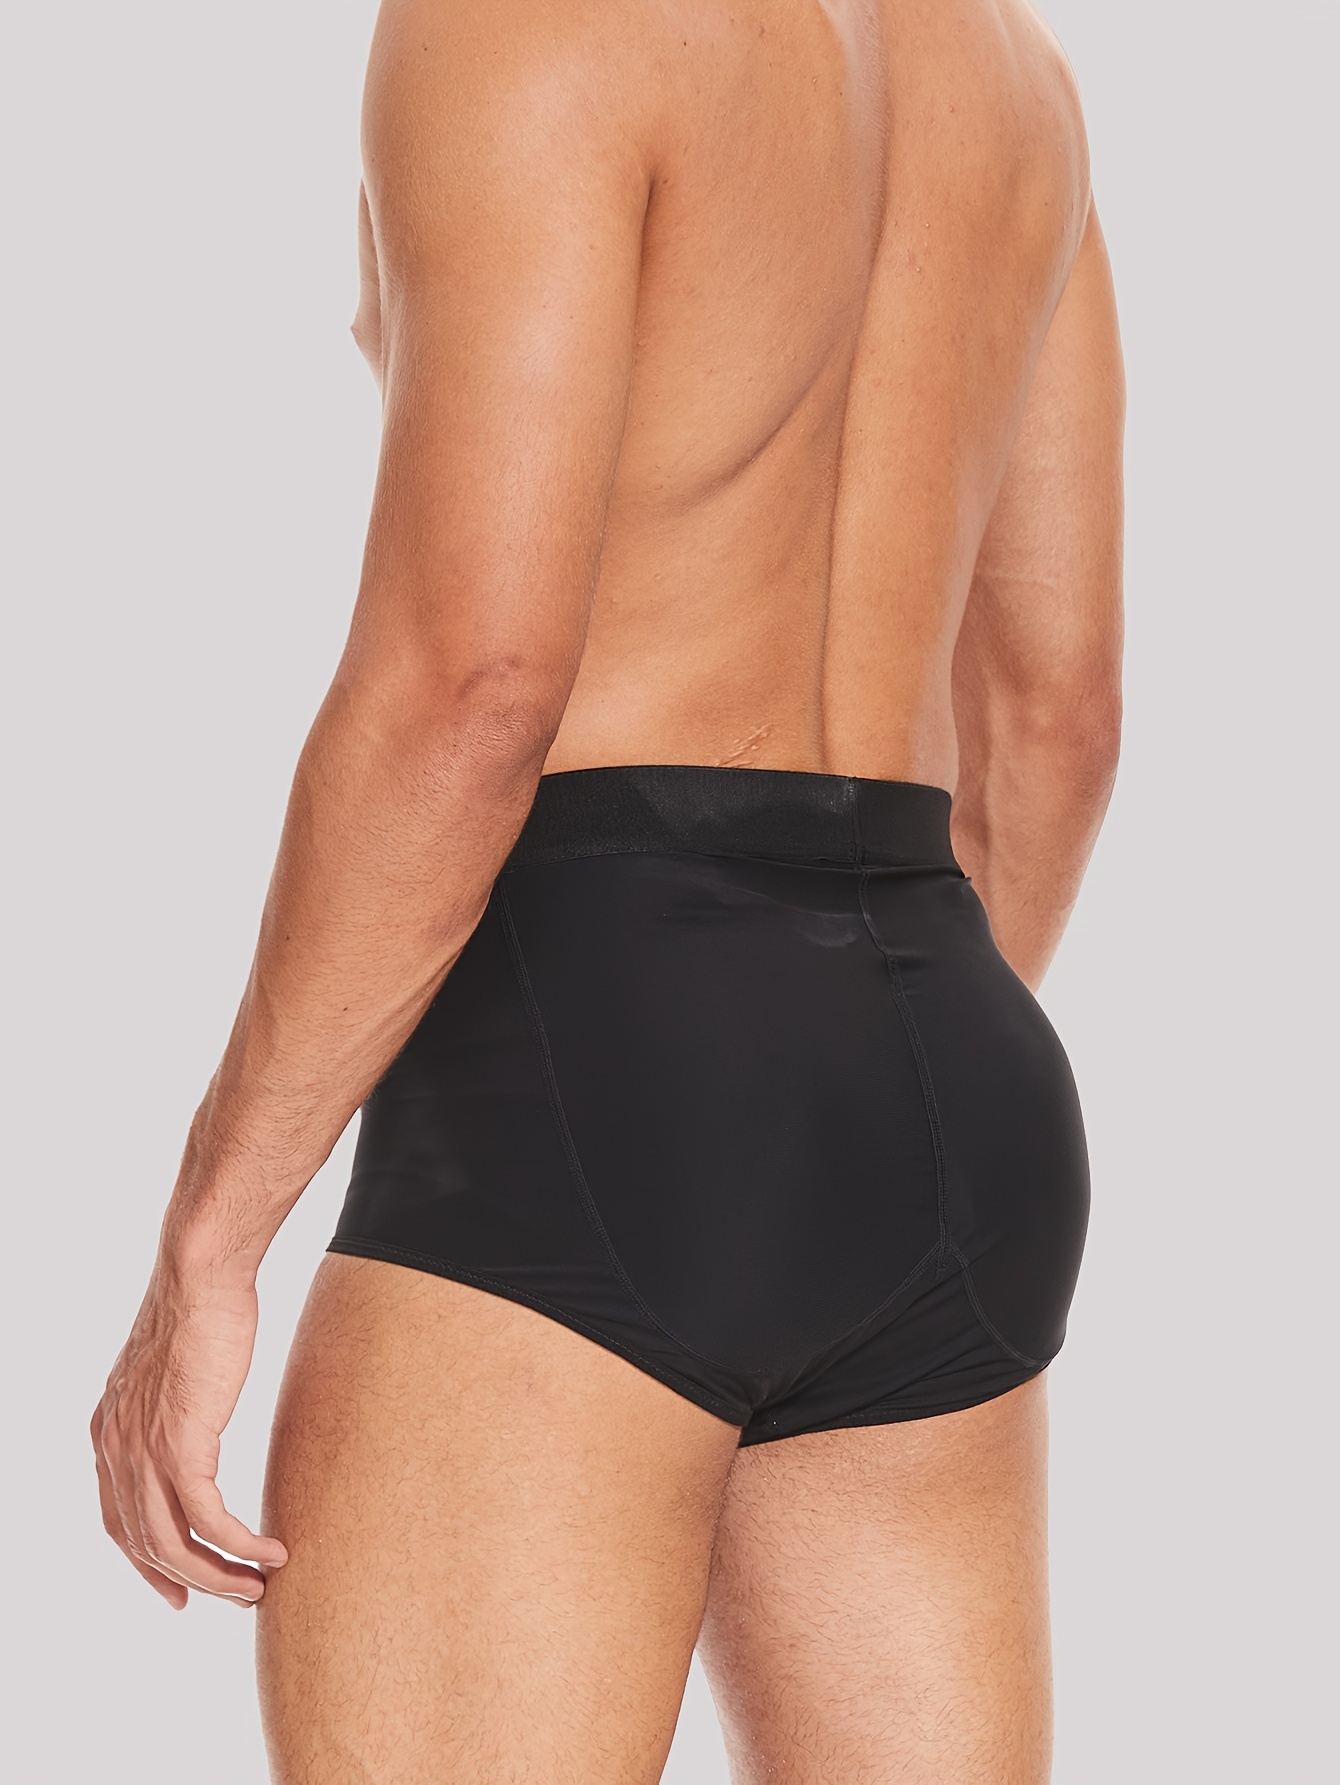 Mens Butt Shaping Enhancing Underwear Hip Padded Boxer Briefs Butt Lifter  Shapewear Trunks Men Body Shaper Control Panties